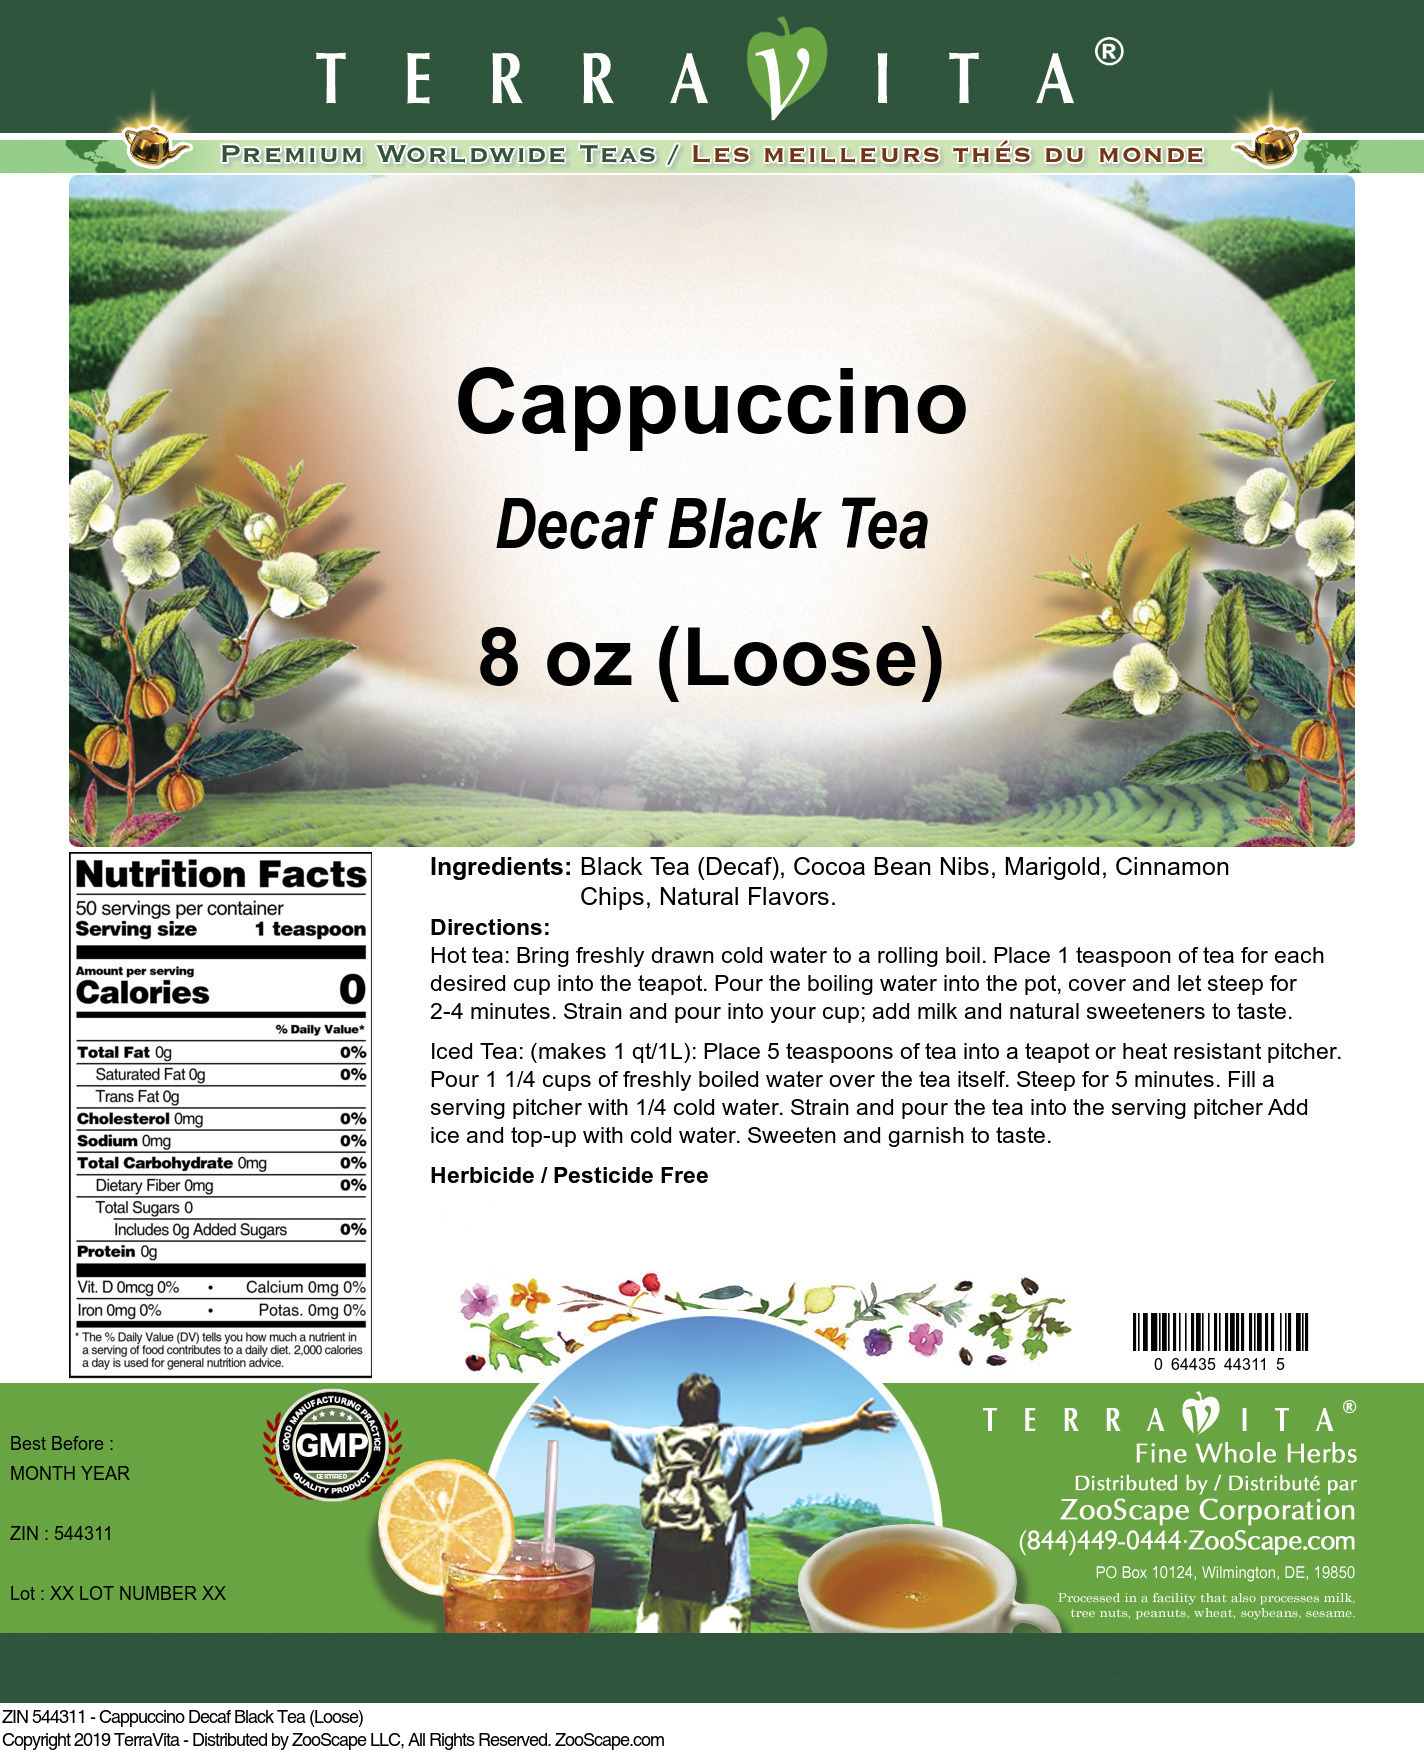 Cappuccino Decaf Black Tea (Loose) - Label